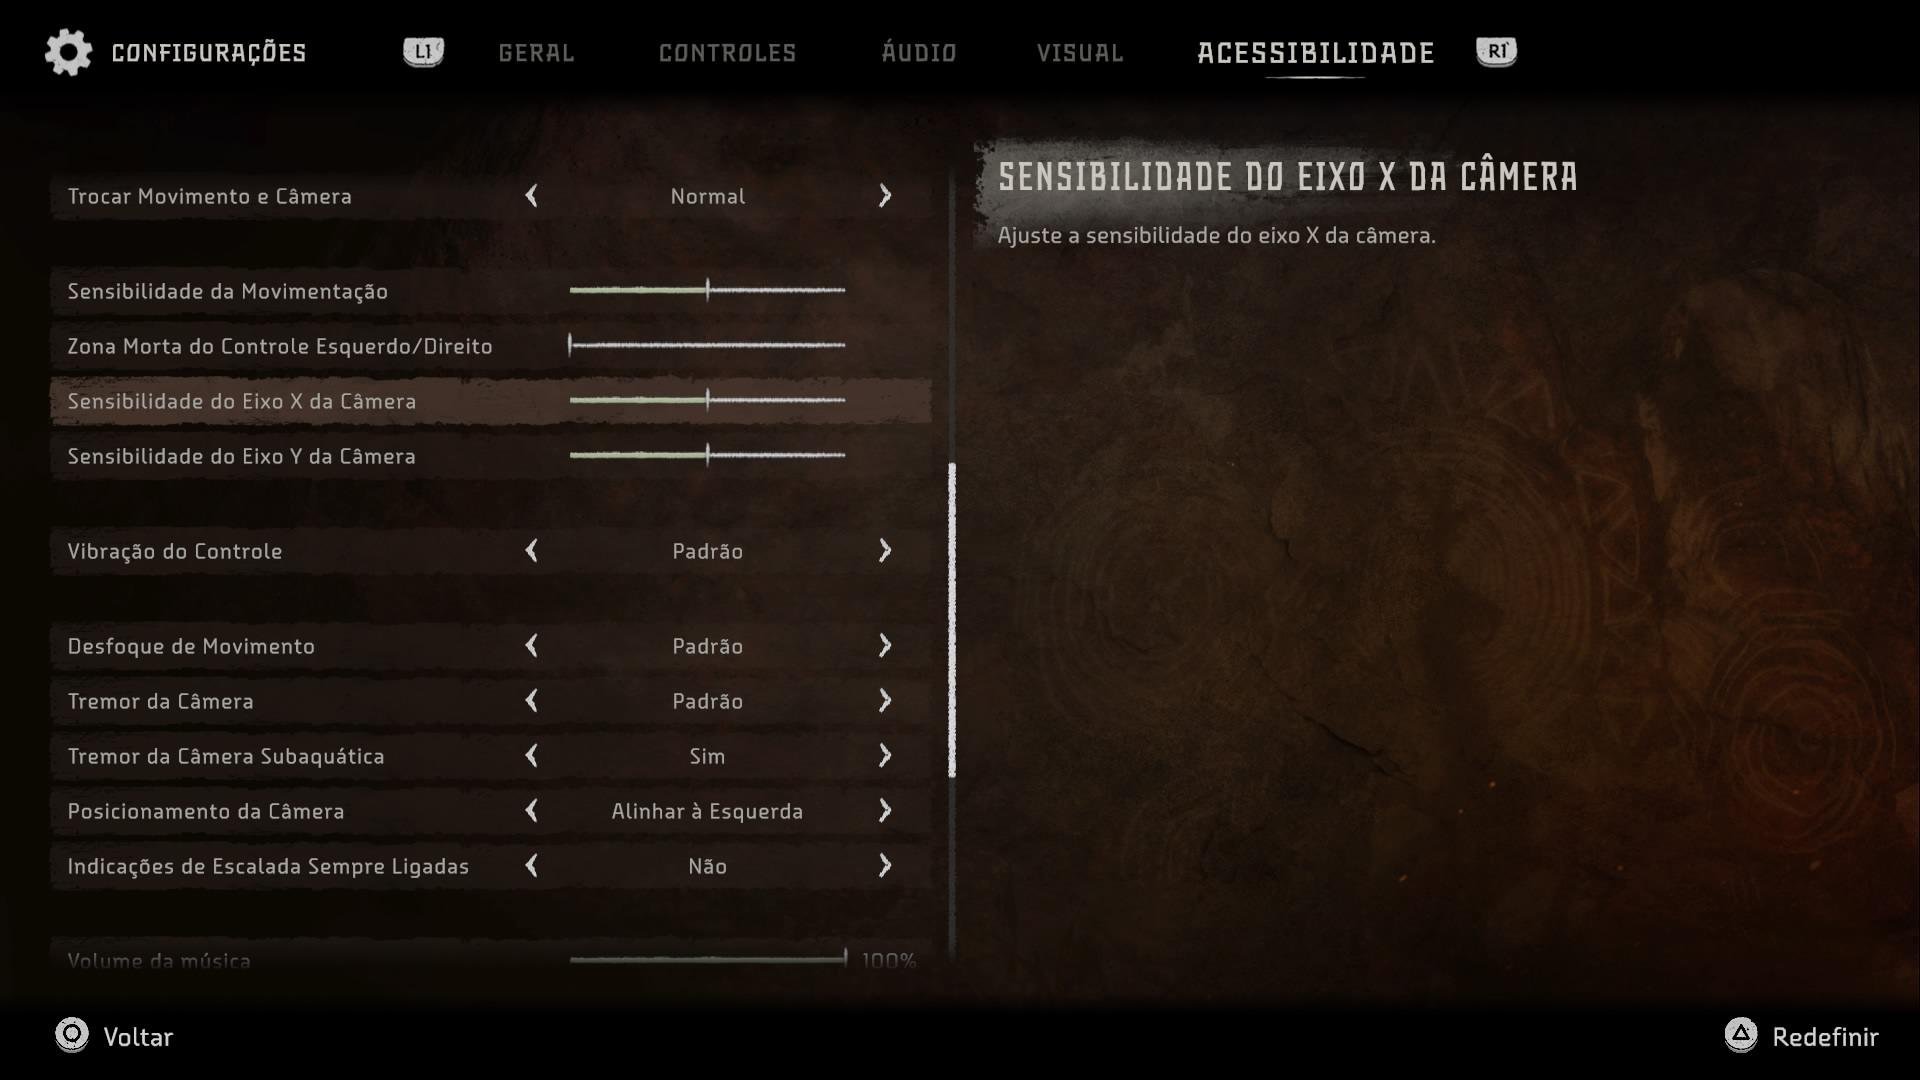 Descrição da imagem menus do jogo